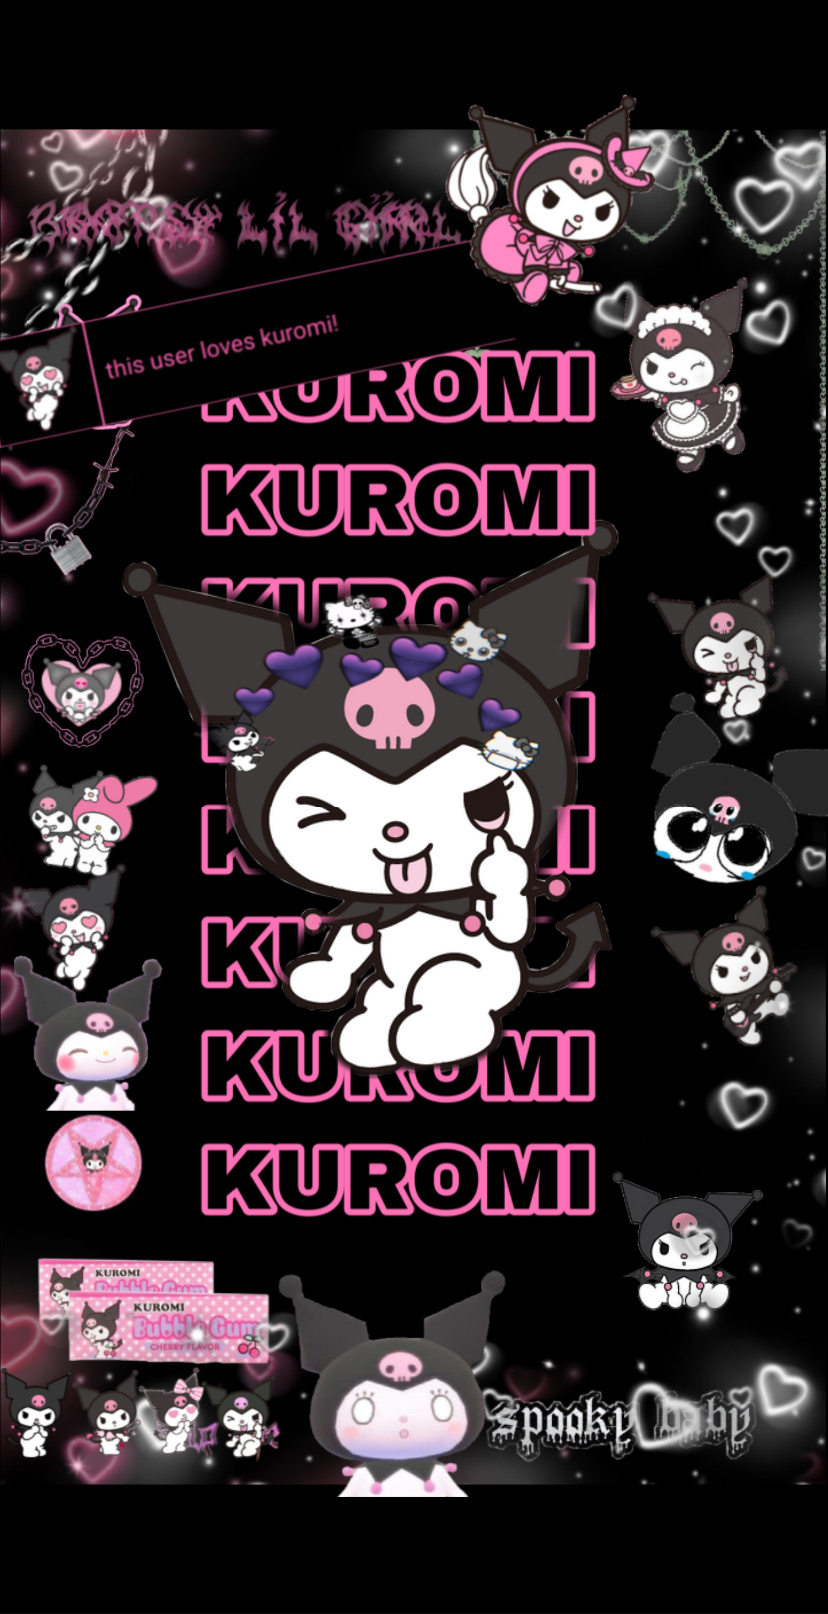 kiromi kuromi freetoedit New bg 0-0 image by @imnutmegomg037